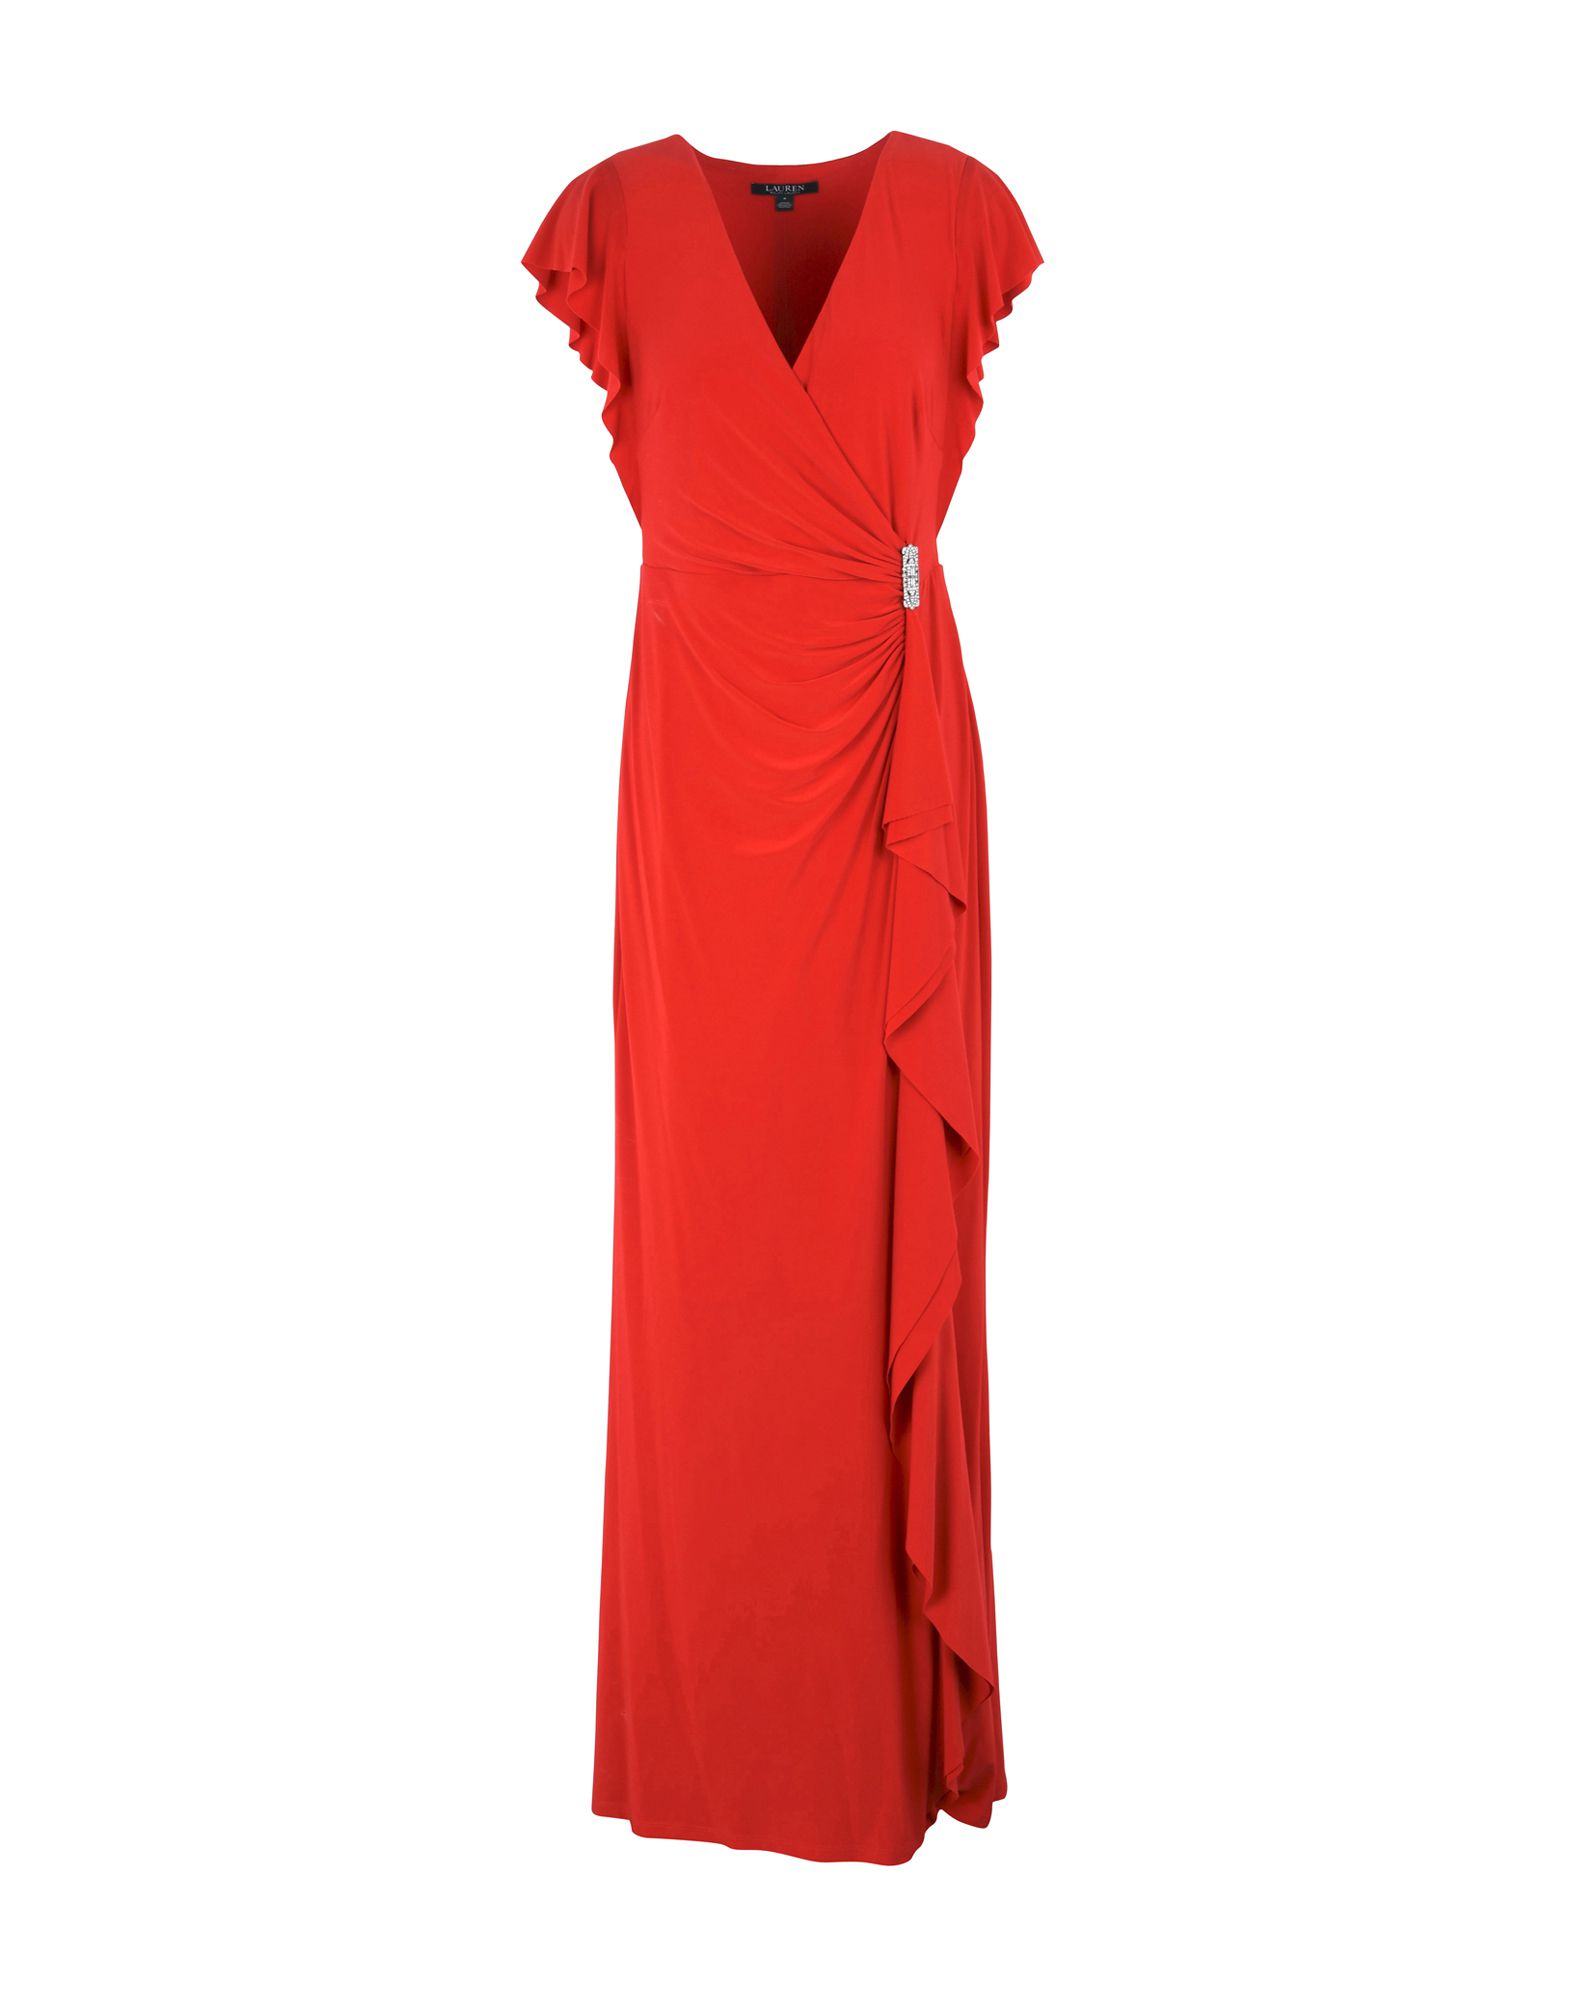 《送料無料》LAUREN RALPH LAUREN レディース ロングワンピース＆ドレス レッド 6 ポリエステル 95% / ポリウレタン 5% Ruffle-Sleeve Dress